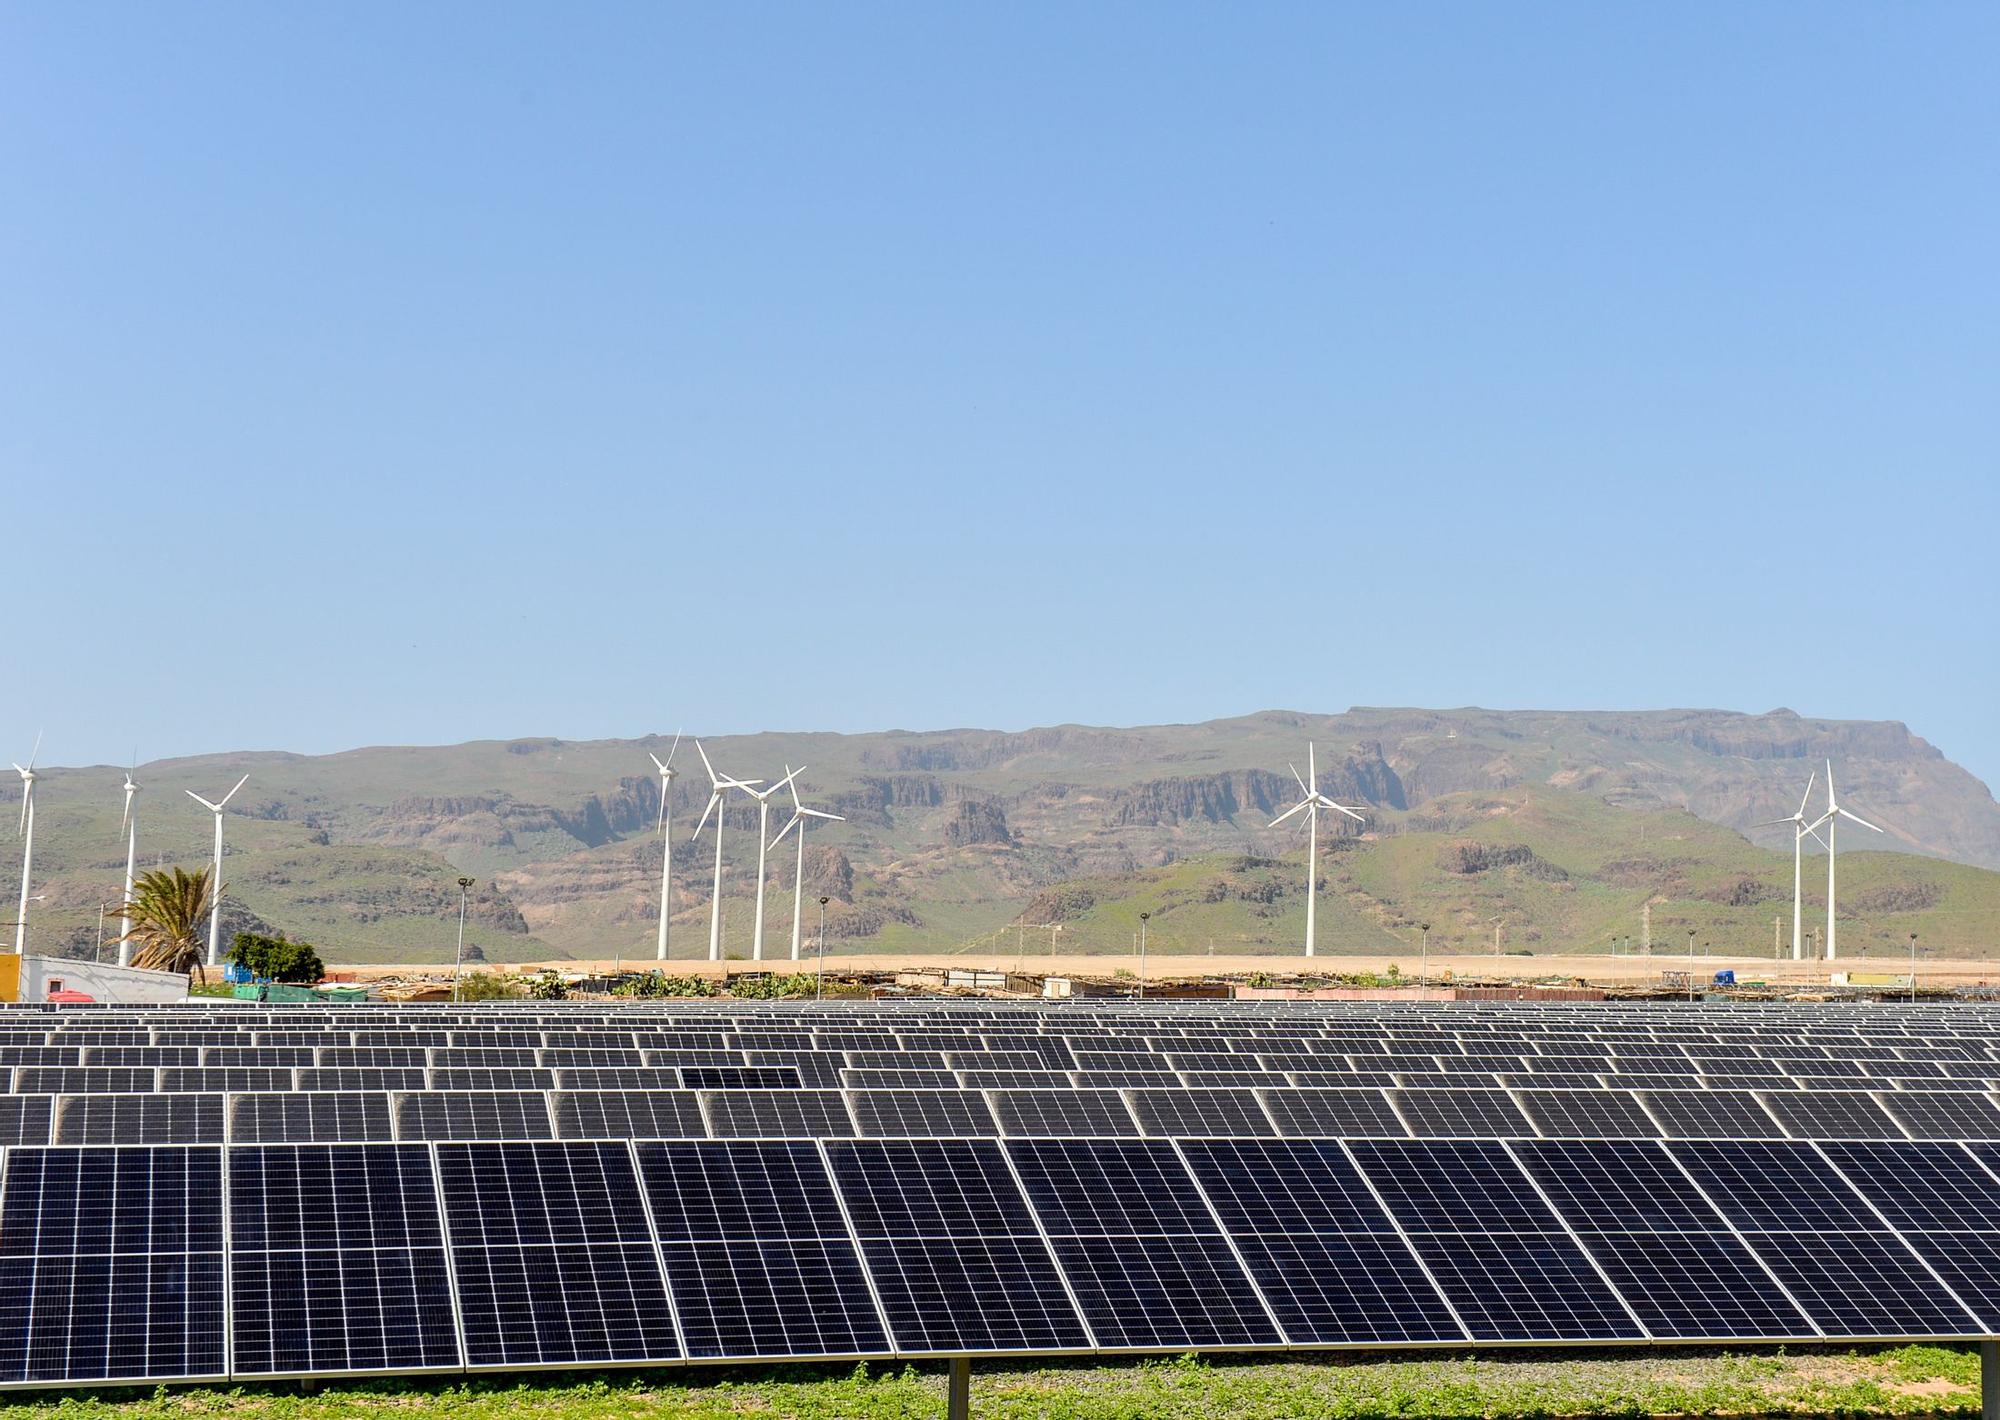 Ecoener invierte 125 millones en el mayor complejo de generación de renovables de Canarias